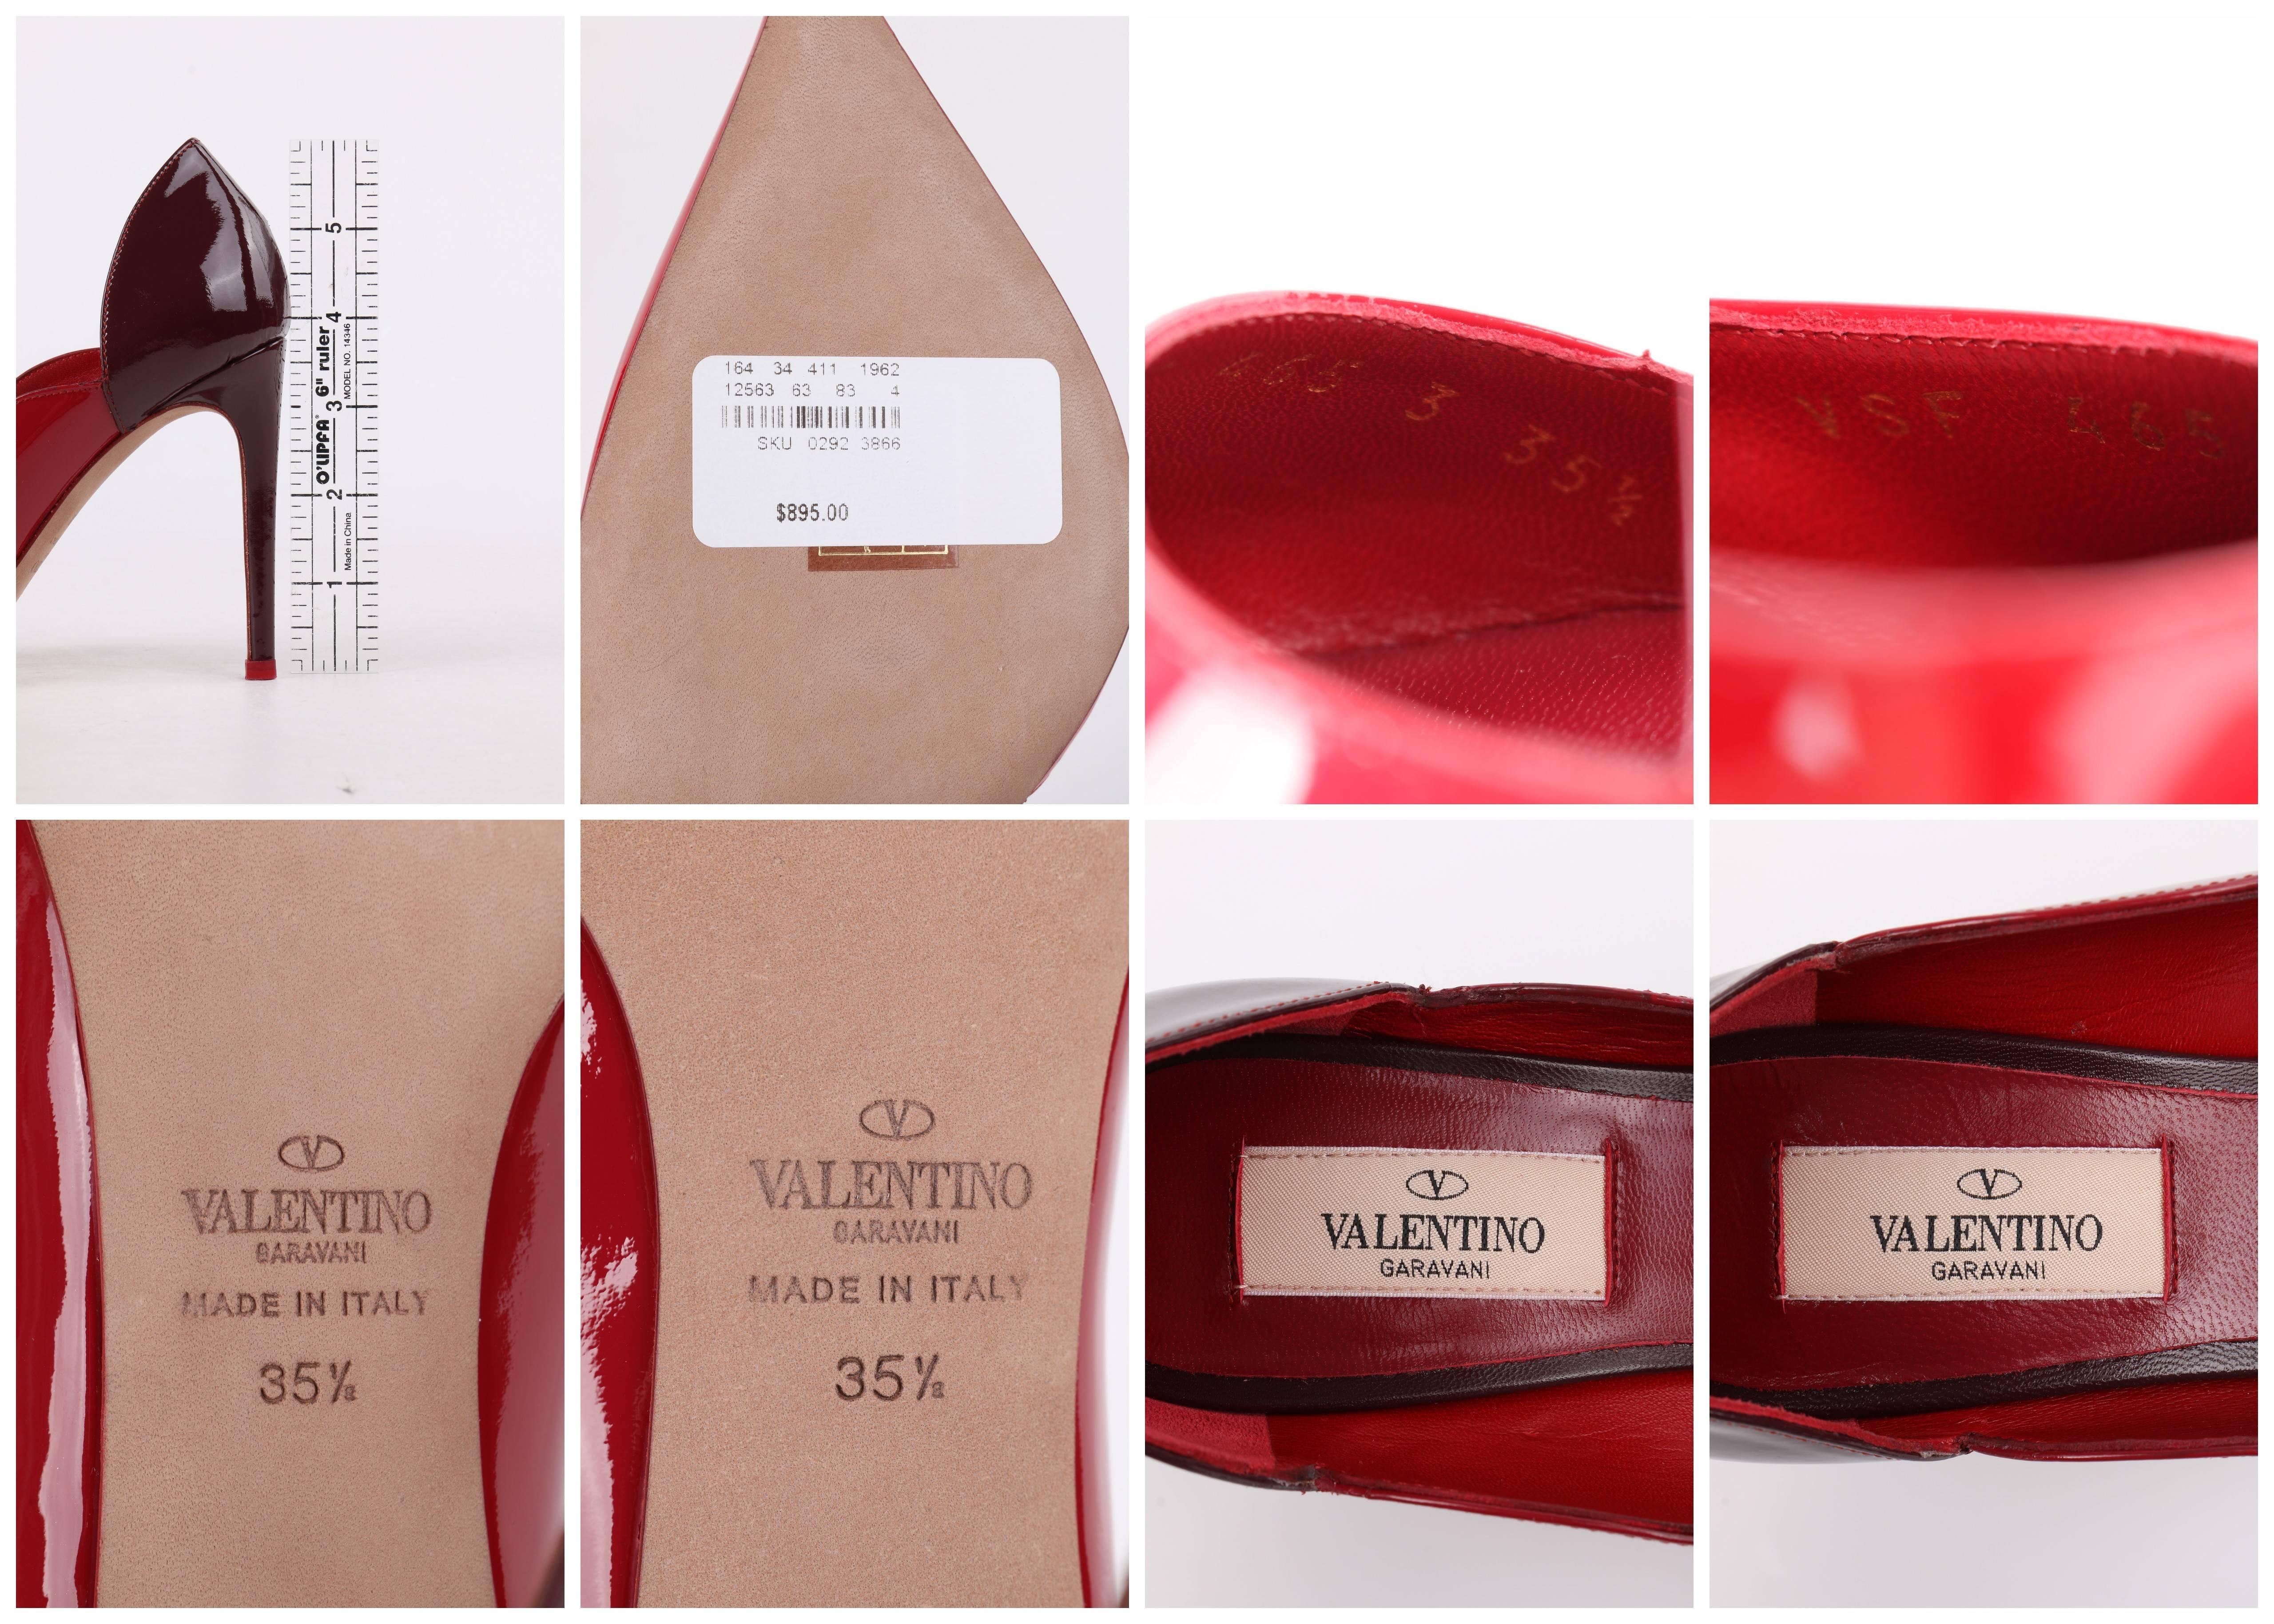 VALENTINO Garavani A/W 2013 Red Tri-color Patent Leather Scalloped Pumps 35 1/2 4